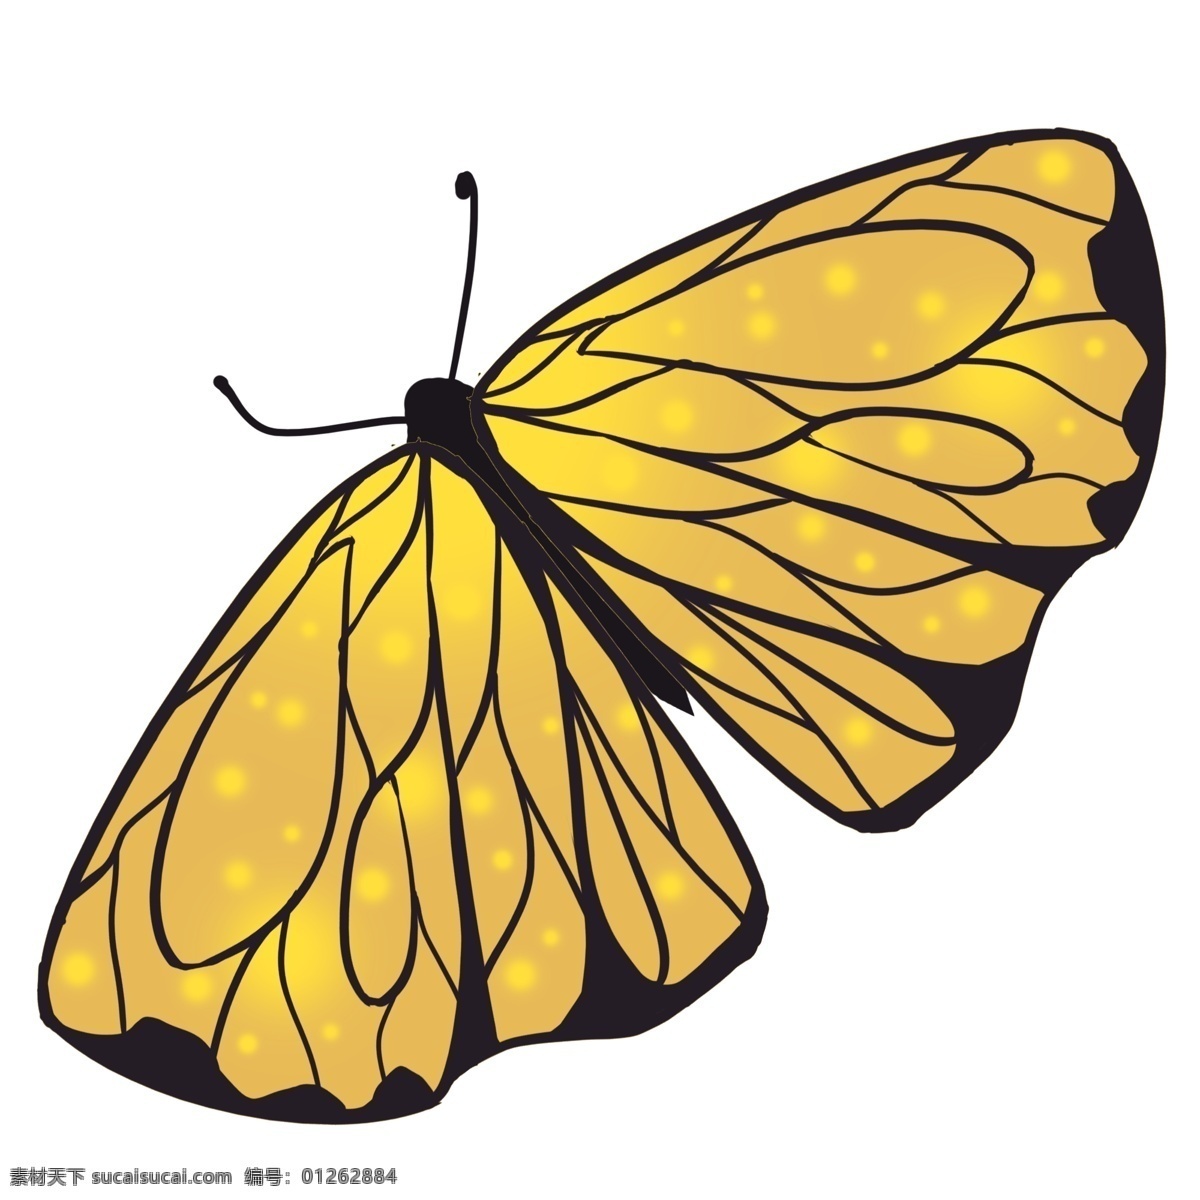 黄黑色蝴蝶 黄色 黑色 蝴蝶 底纹 扁宽